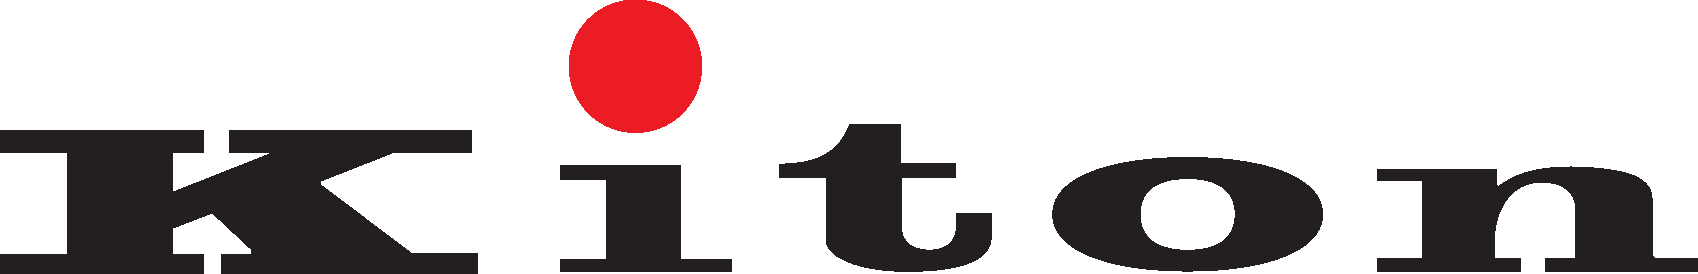 Kiton Logo png